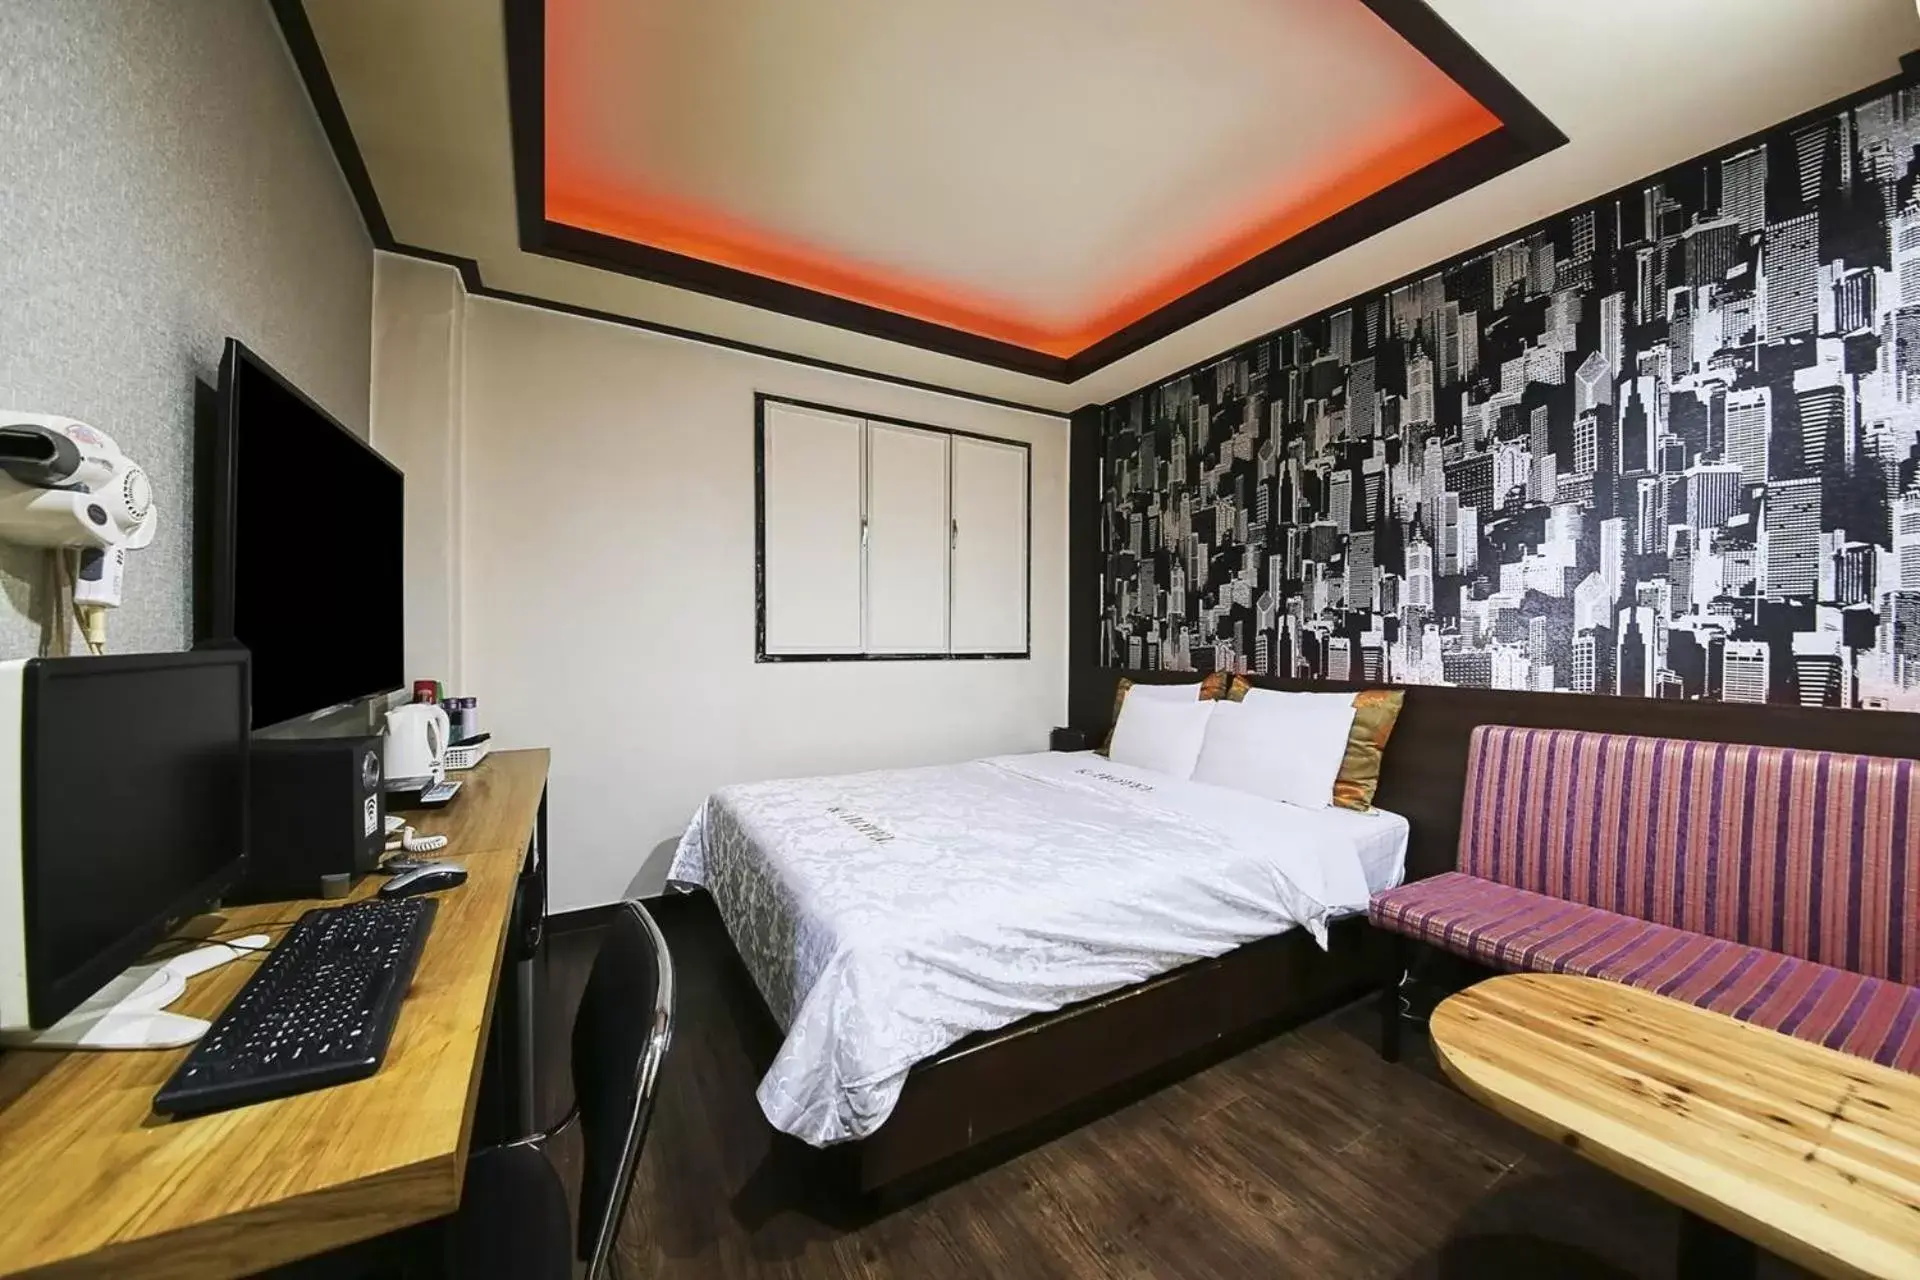 Bed in K2 Motel